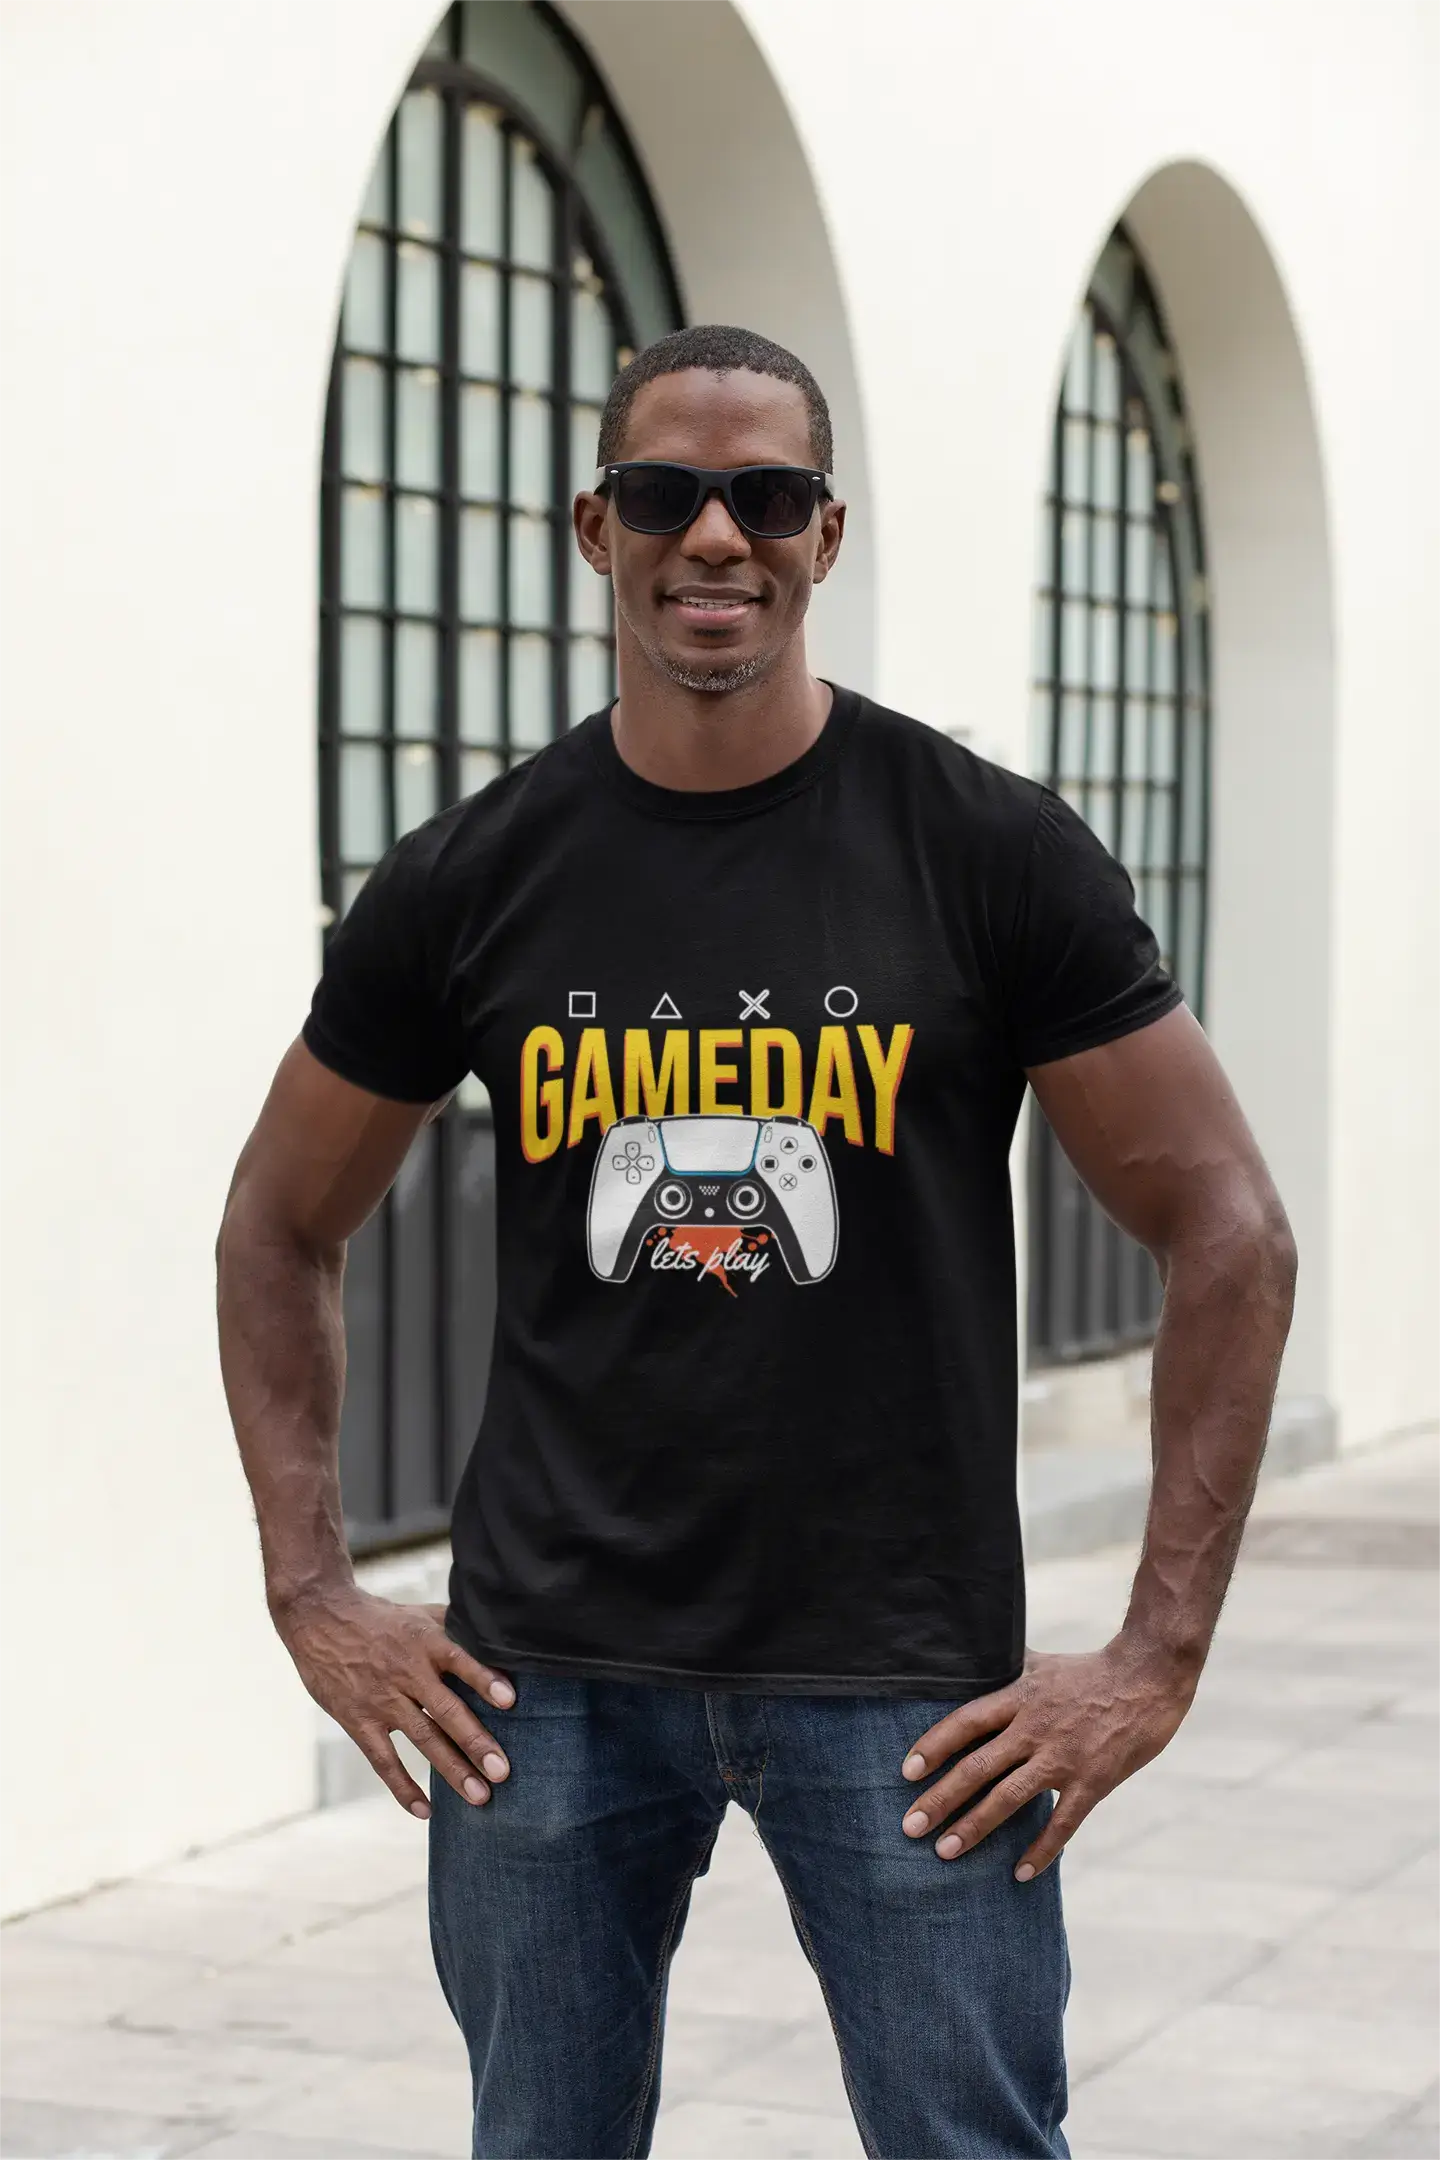 ULTRABASIC Men's Gaming T-Shirt Gameday Let's Play - Gamer Tee Shirt